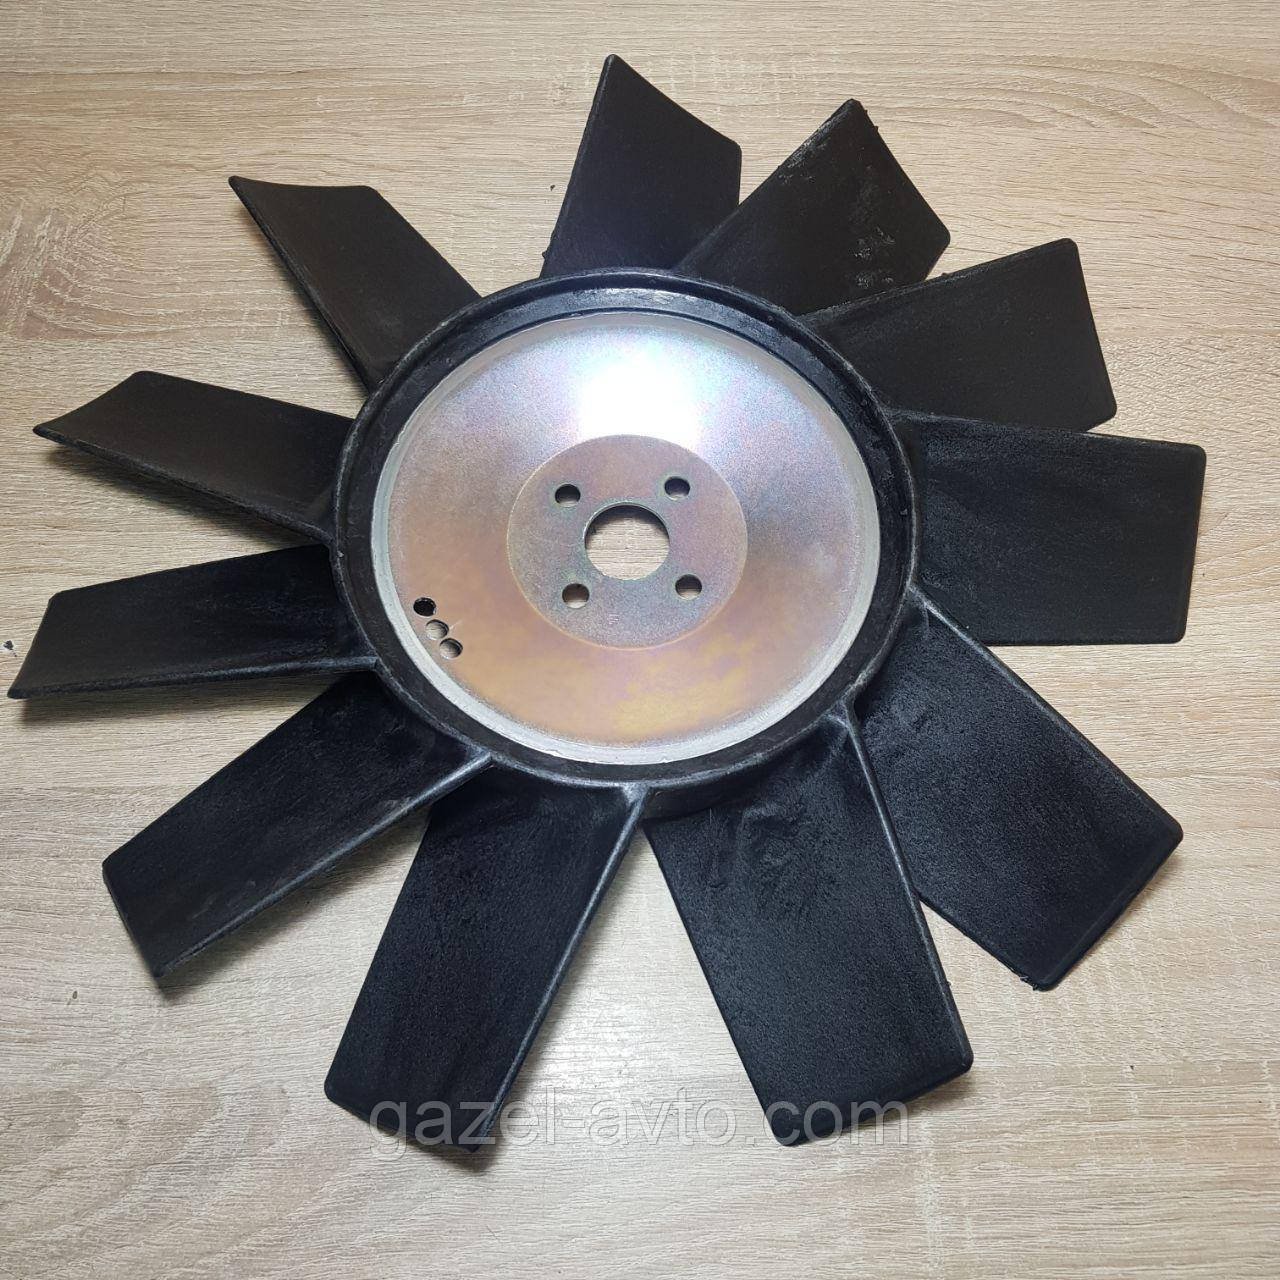 Вентилятор системы охлаждения (крыльчатка) Газель Бизнес дв.4216 Евро-3 ,инжектор, 11 лопаст. (покупн. ГАЗ)